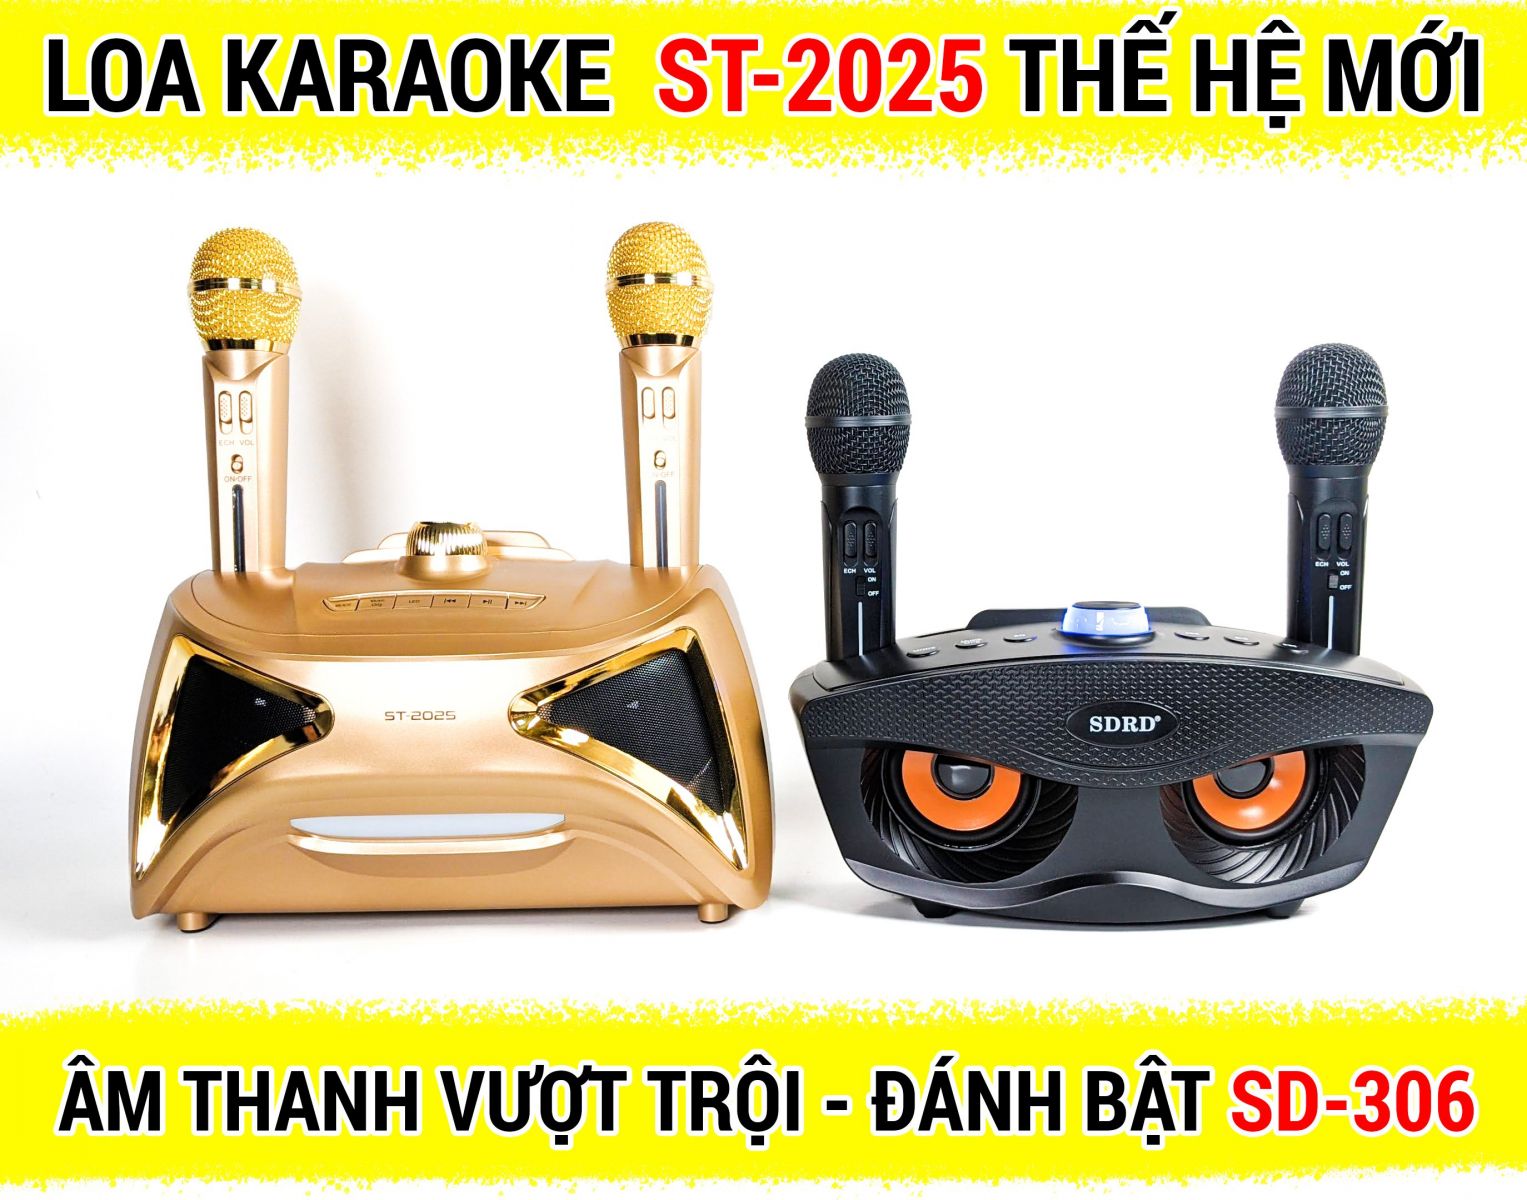 Loa bluetooth karaoke ST 2025 - Loa bass đôi - Kèm 2 micro không dây - Nghe nhạc, karaoke cực chất